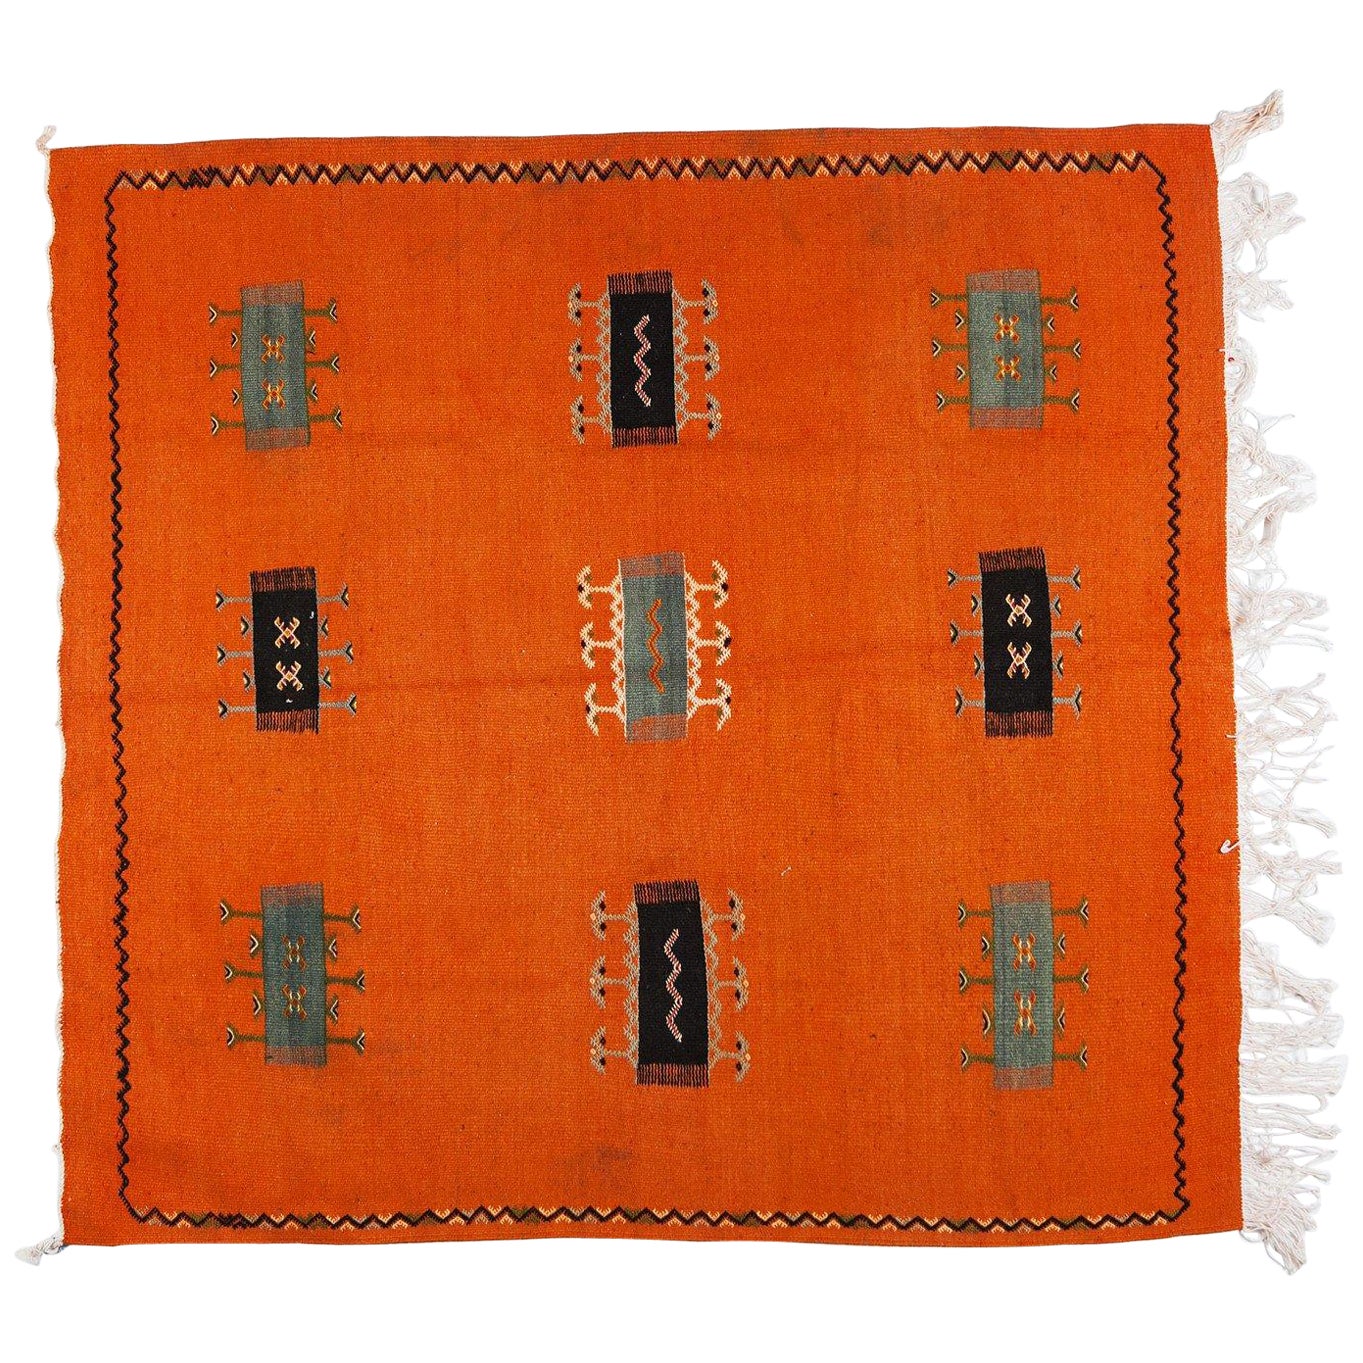 Vintage marokkanischen Stammes Orange handgewebte Wolle Teppich oder Teppich